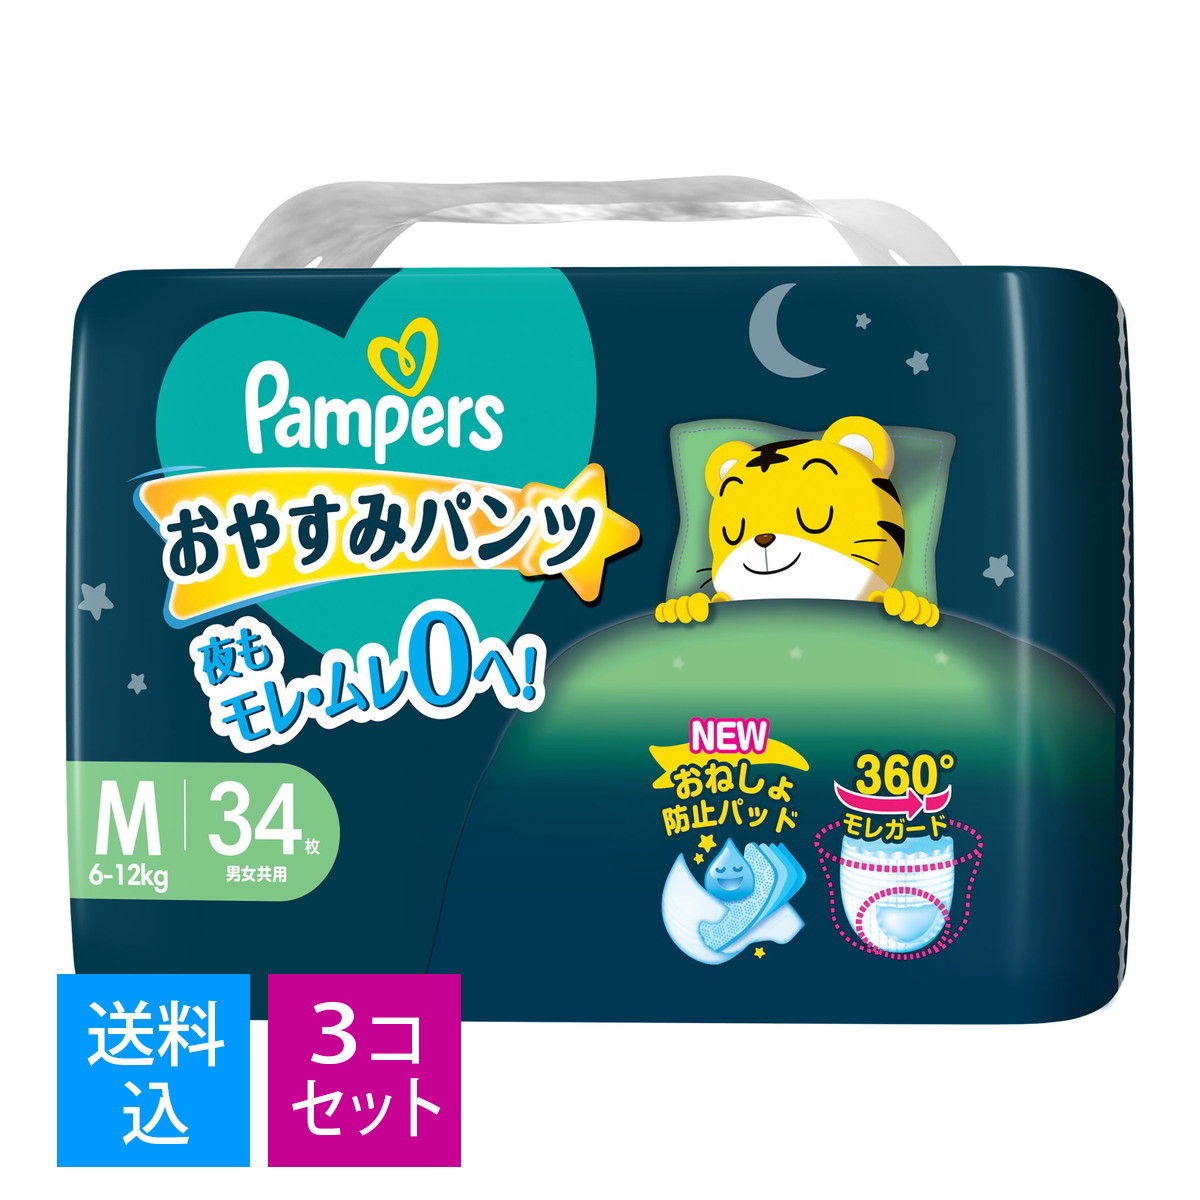 【楽天市場】P&G パンパース Pampers おやすみパンツ L スーパー 